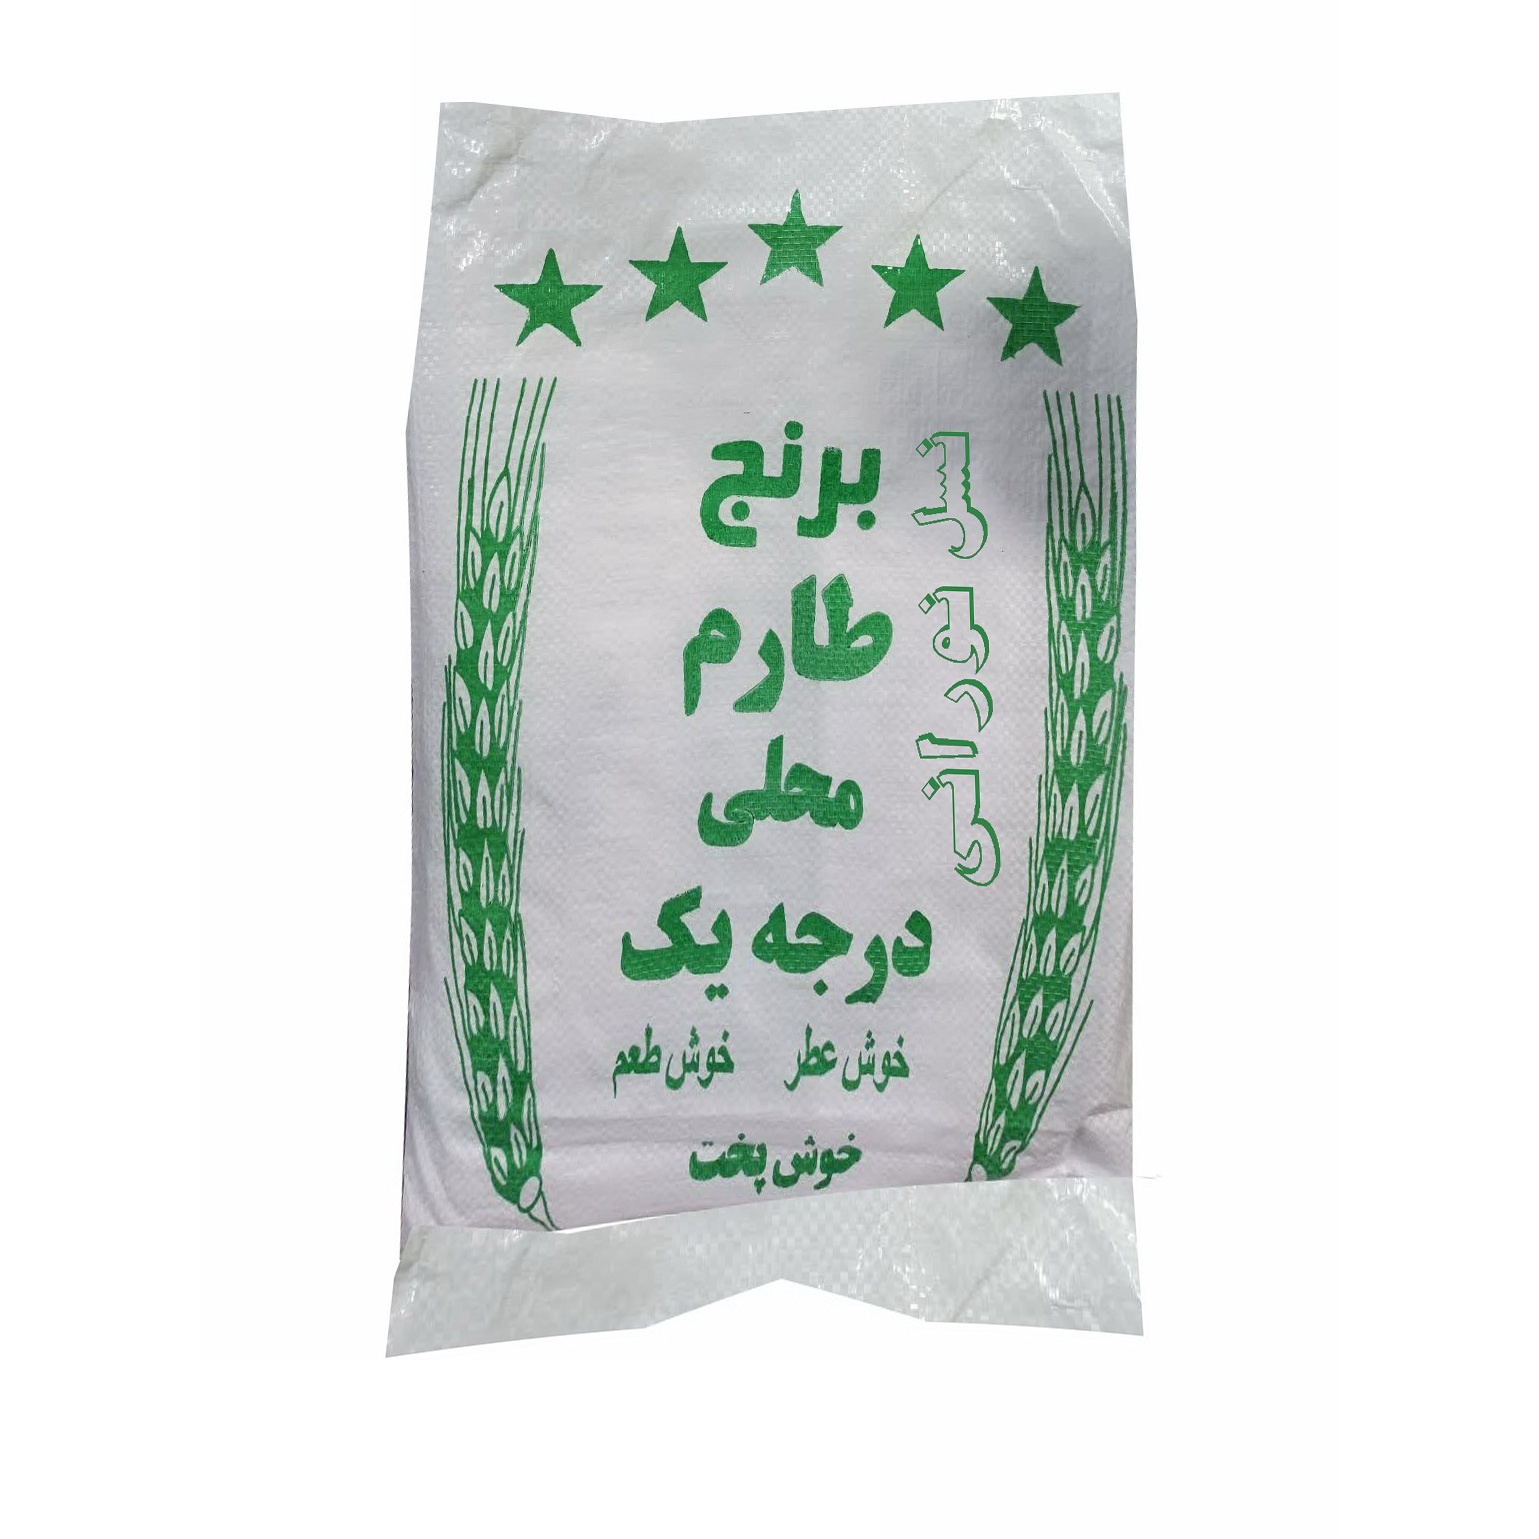 نکته خرید - قیمت روز برنج ایرانی طارم محلی قائمشهر - 10 کیلوگرم خرید